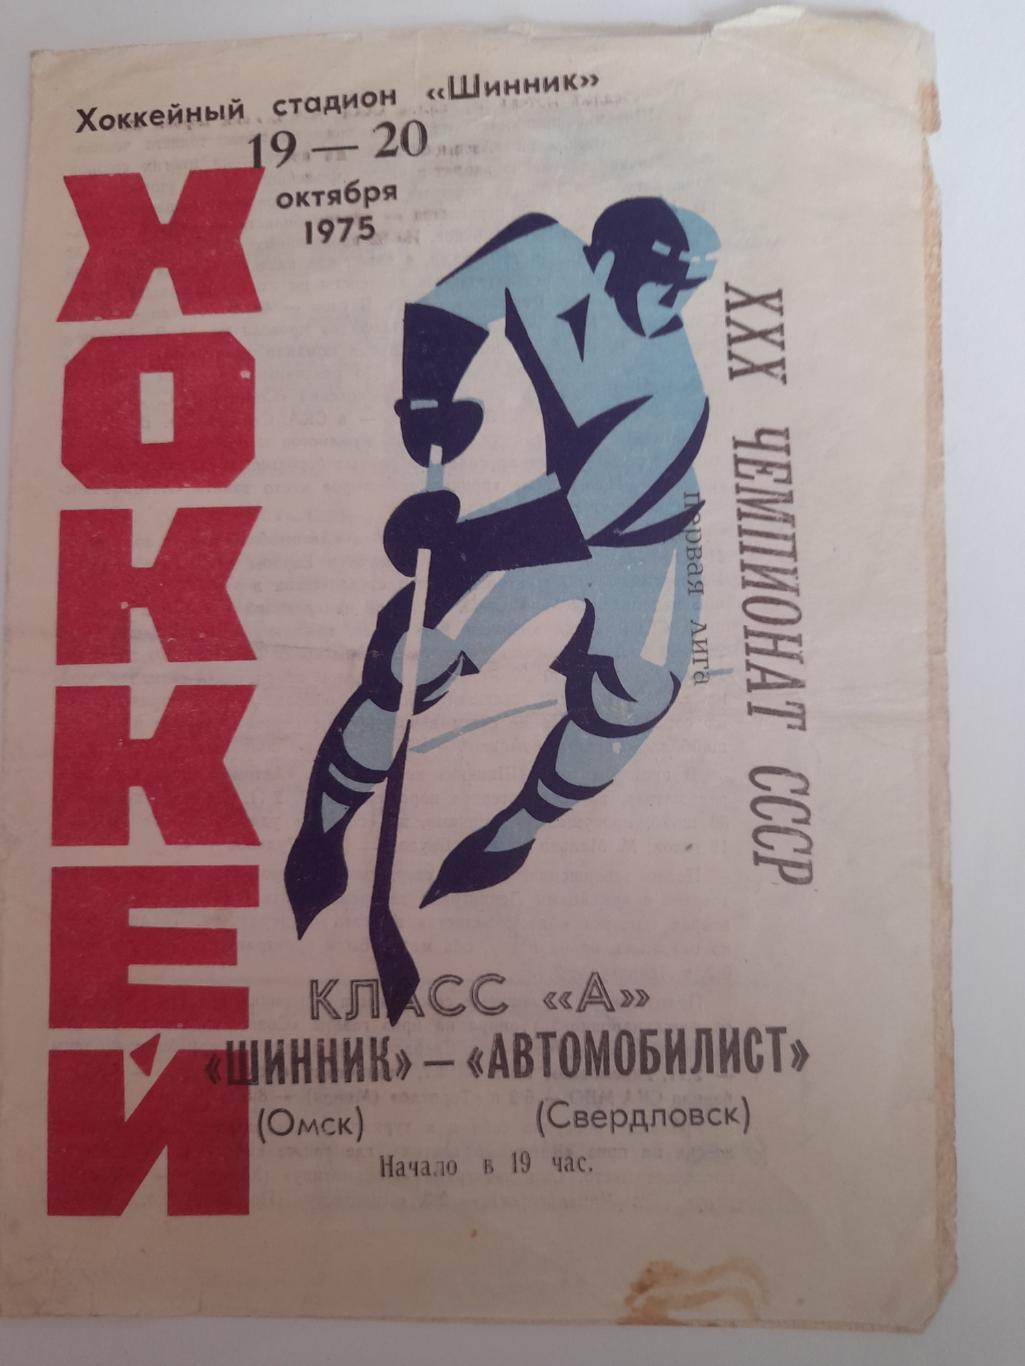 Шинник Омск - Автомобилист Свердловск 1975